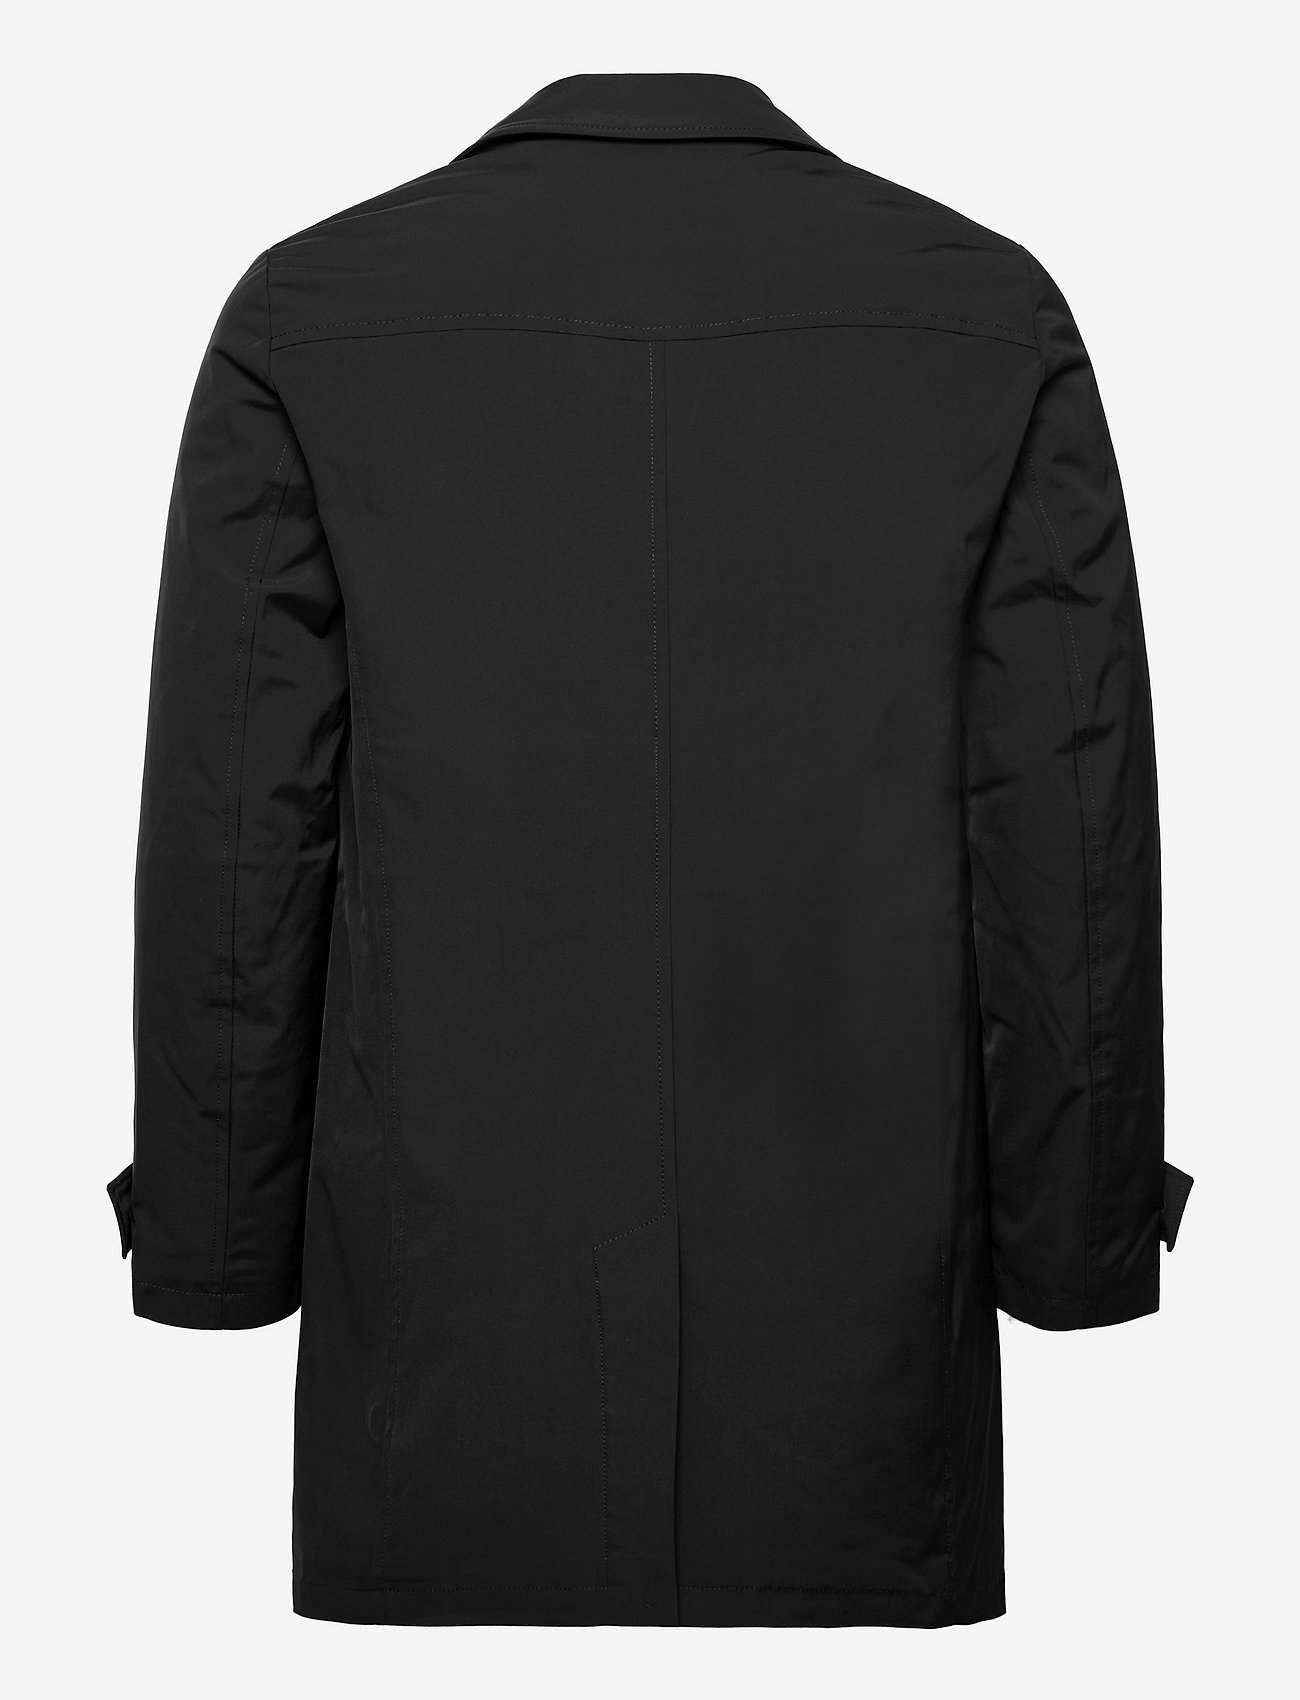 Seven Seas Copenhagen - The Car Coat I Men's - light coats - black - 1